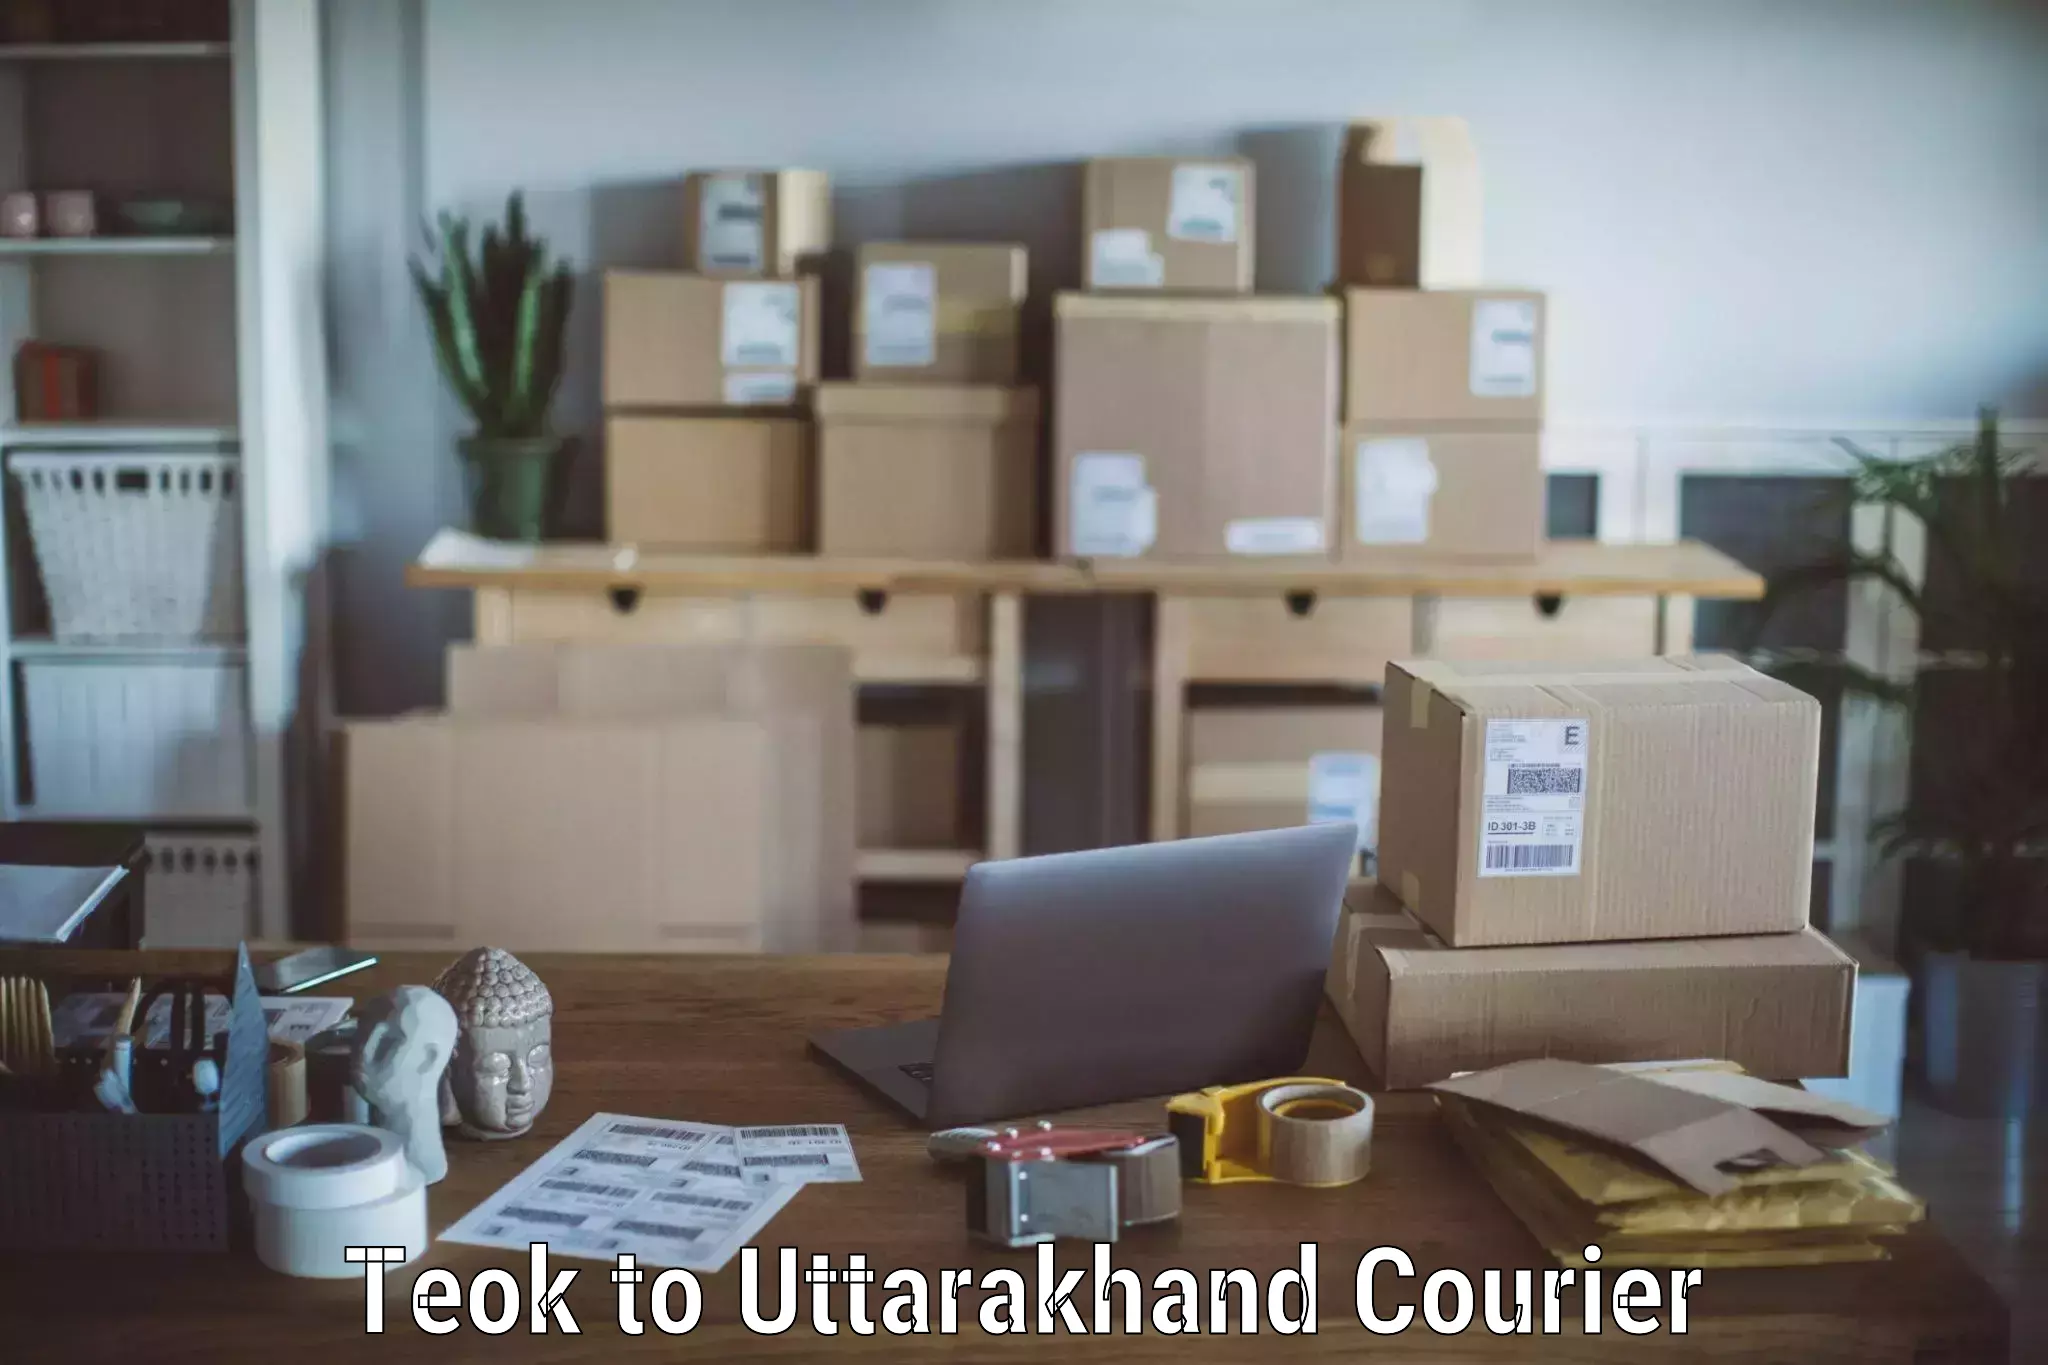 Trusted moving company Teok to Uttarkashi